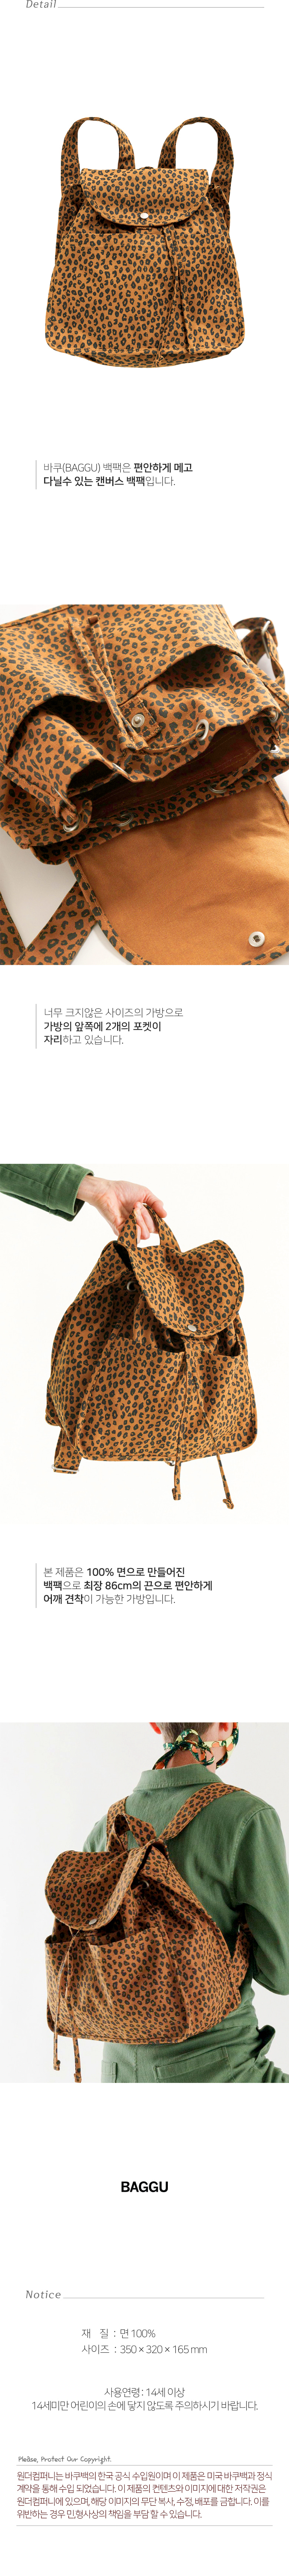 [바쿠백] 드로스트링 캔버스 백팩 Nutmeg Leopard (New) 49,000원 - 원더스토어 패션잡화, 가방, 백팩, 패브릭 바보사랑 [바쿠백] 드로스트링 캔버스 백팩 Nutmeg Leopard (New) 49,000원 - 원더스토어 패션잡화, 가방, 백팩, 패브릭 바보사랑